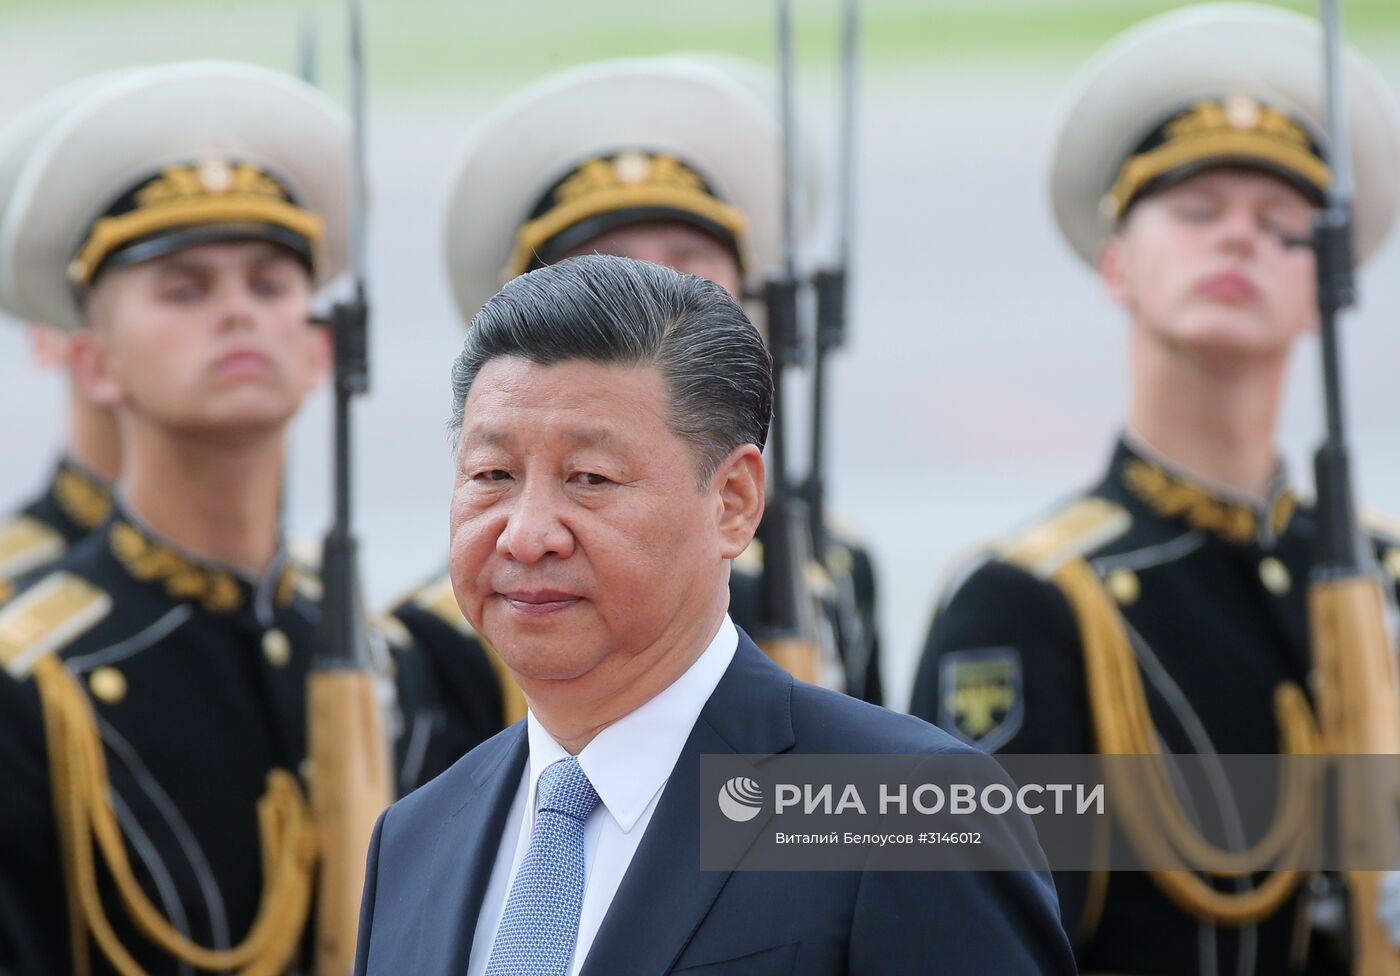 Прилет председателя Китайской Народной Республики Си Цзиньпина в Москву